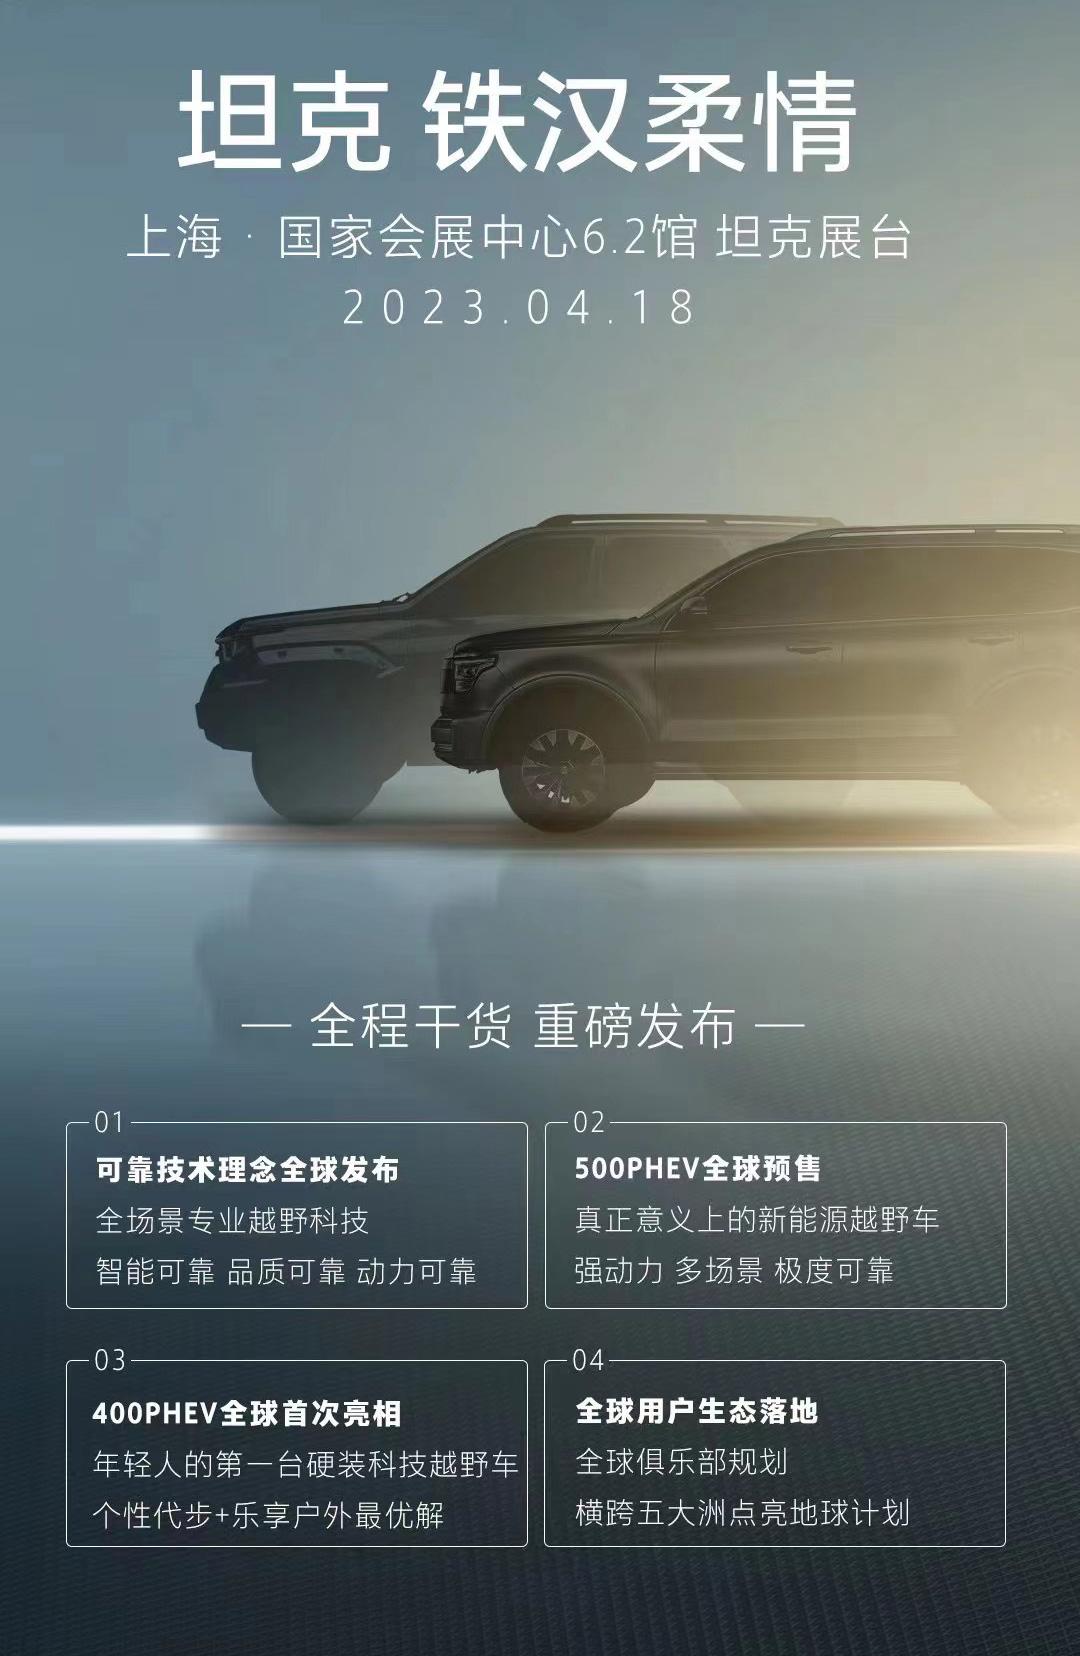 长城坦克400PHEV/500PHEV将于上海车展亮相预售